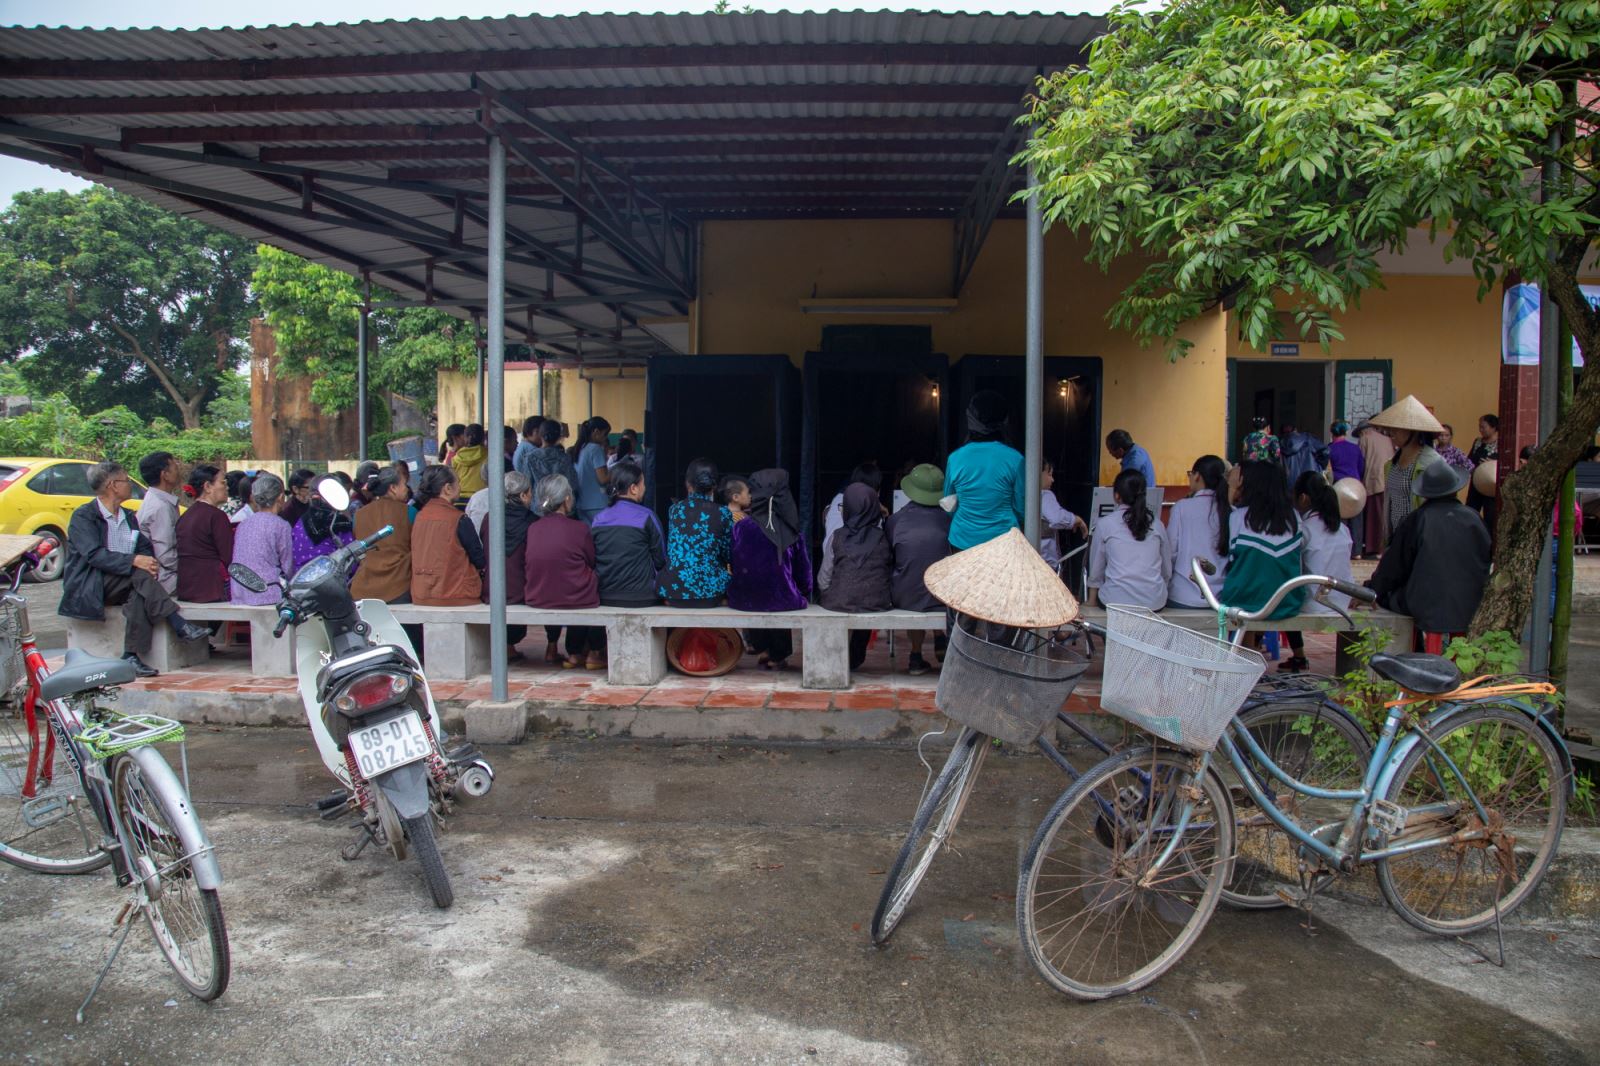 Hưởng ứng chương trình khám mắt nhân đạo của BV mắt Alina, người dân xã Chỉ Đạo (huyện Văn Lâm, Hà Nội) có mặt từ sáng sớm.